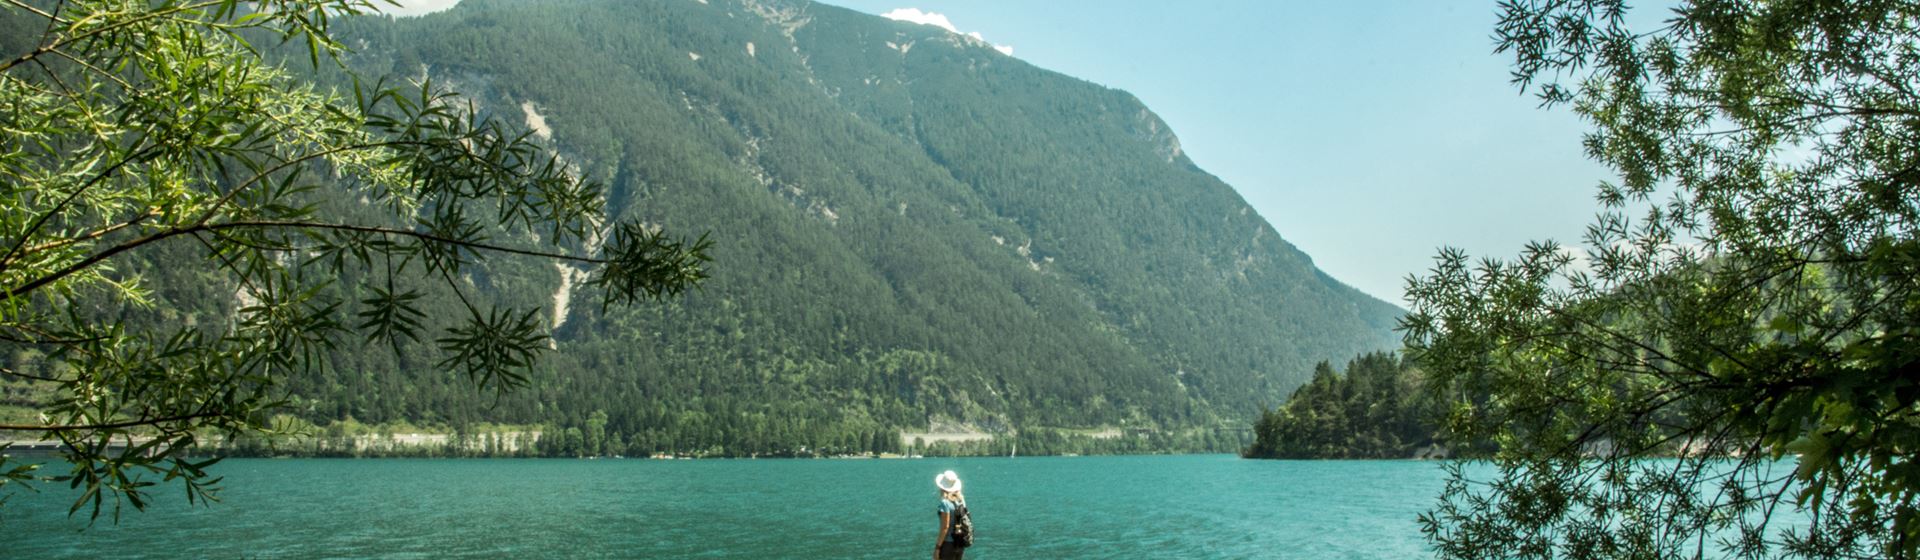 Een vrouw kijkt uit op de Achensee in Oostenrijk. Het meer is groenblauw. Op de achtergrond is een berg te zien.